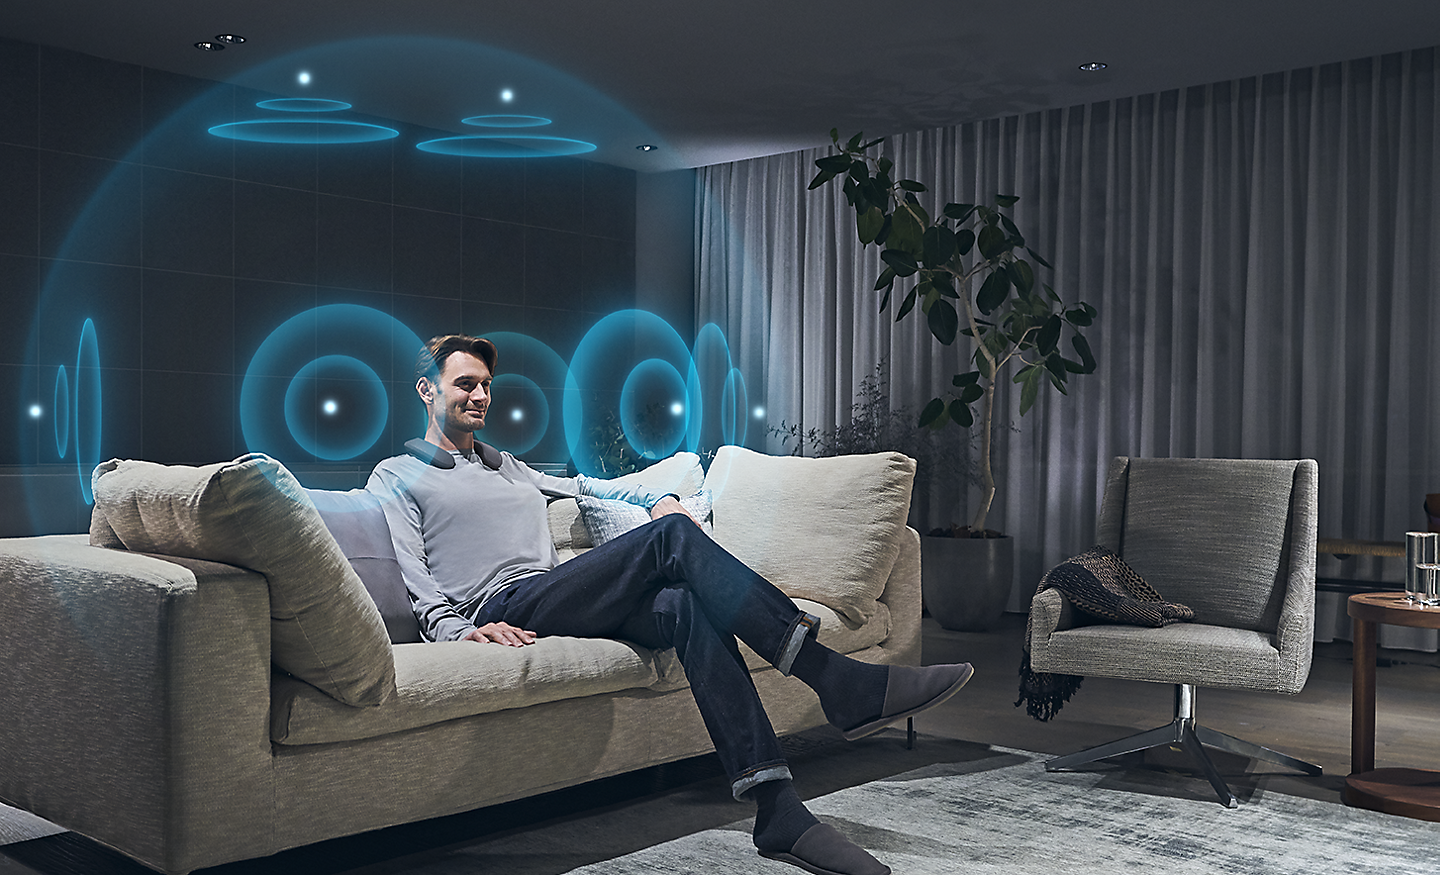 Mann in einem Wohnzimmer mit Darstellung von blauen Klangwellen, die für 360 Spatial Sound stehen